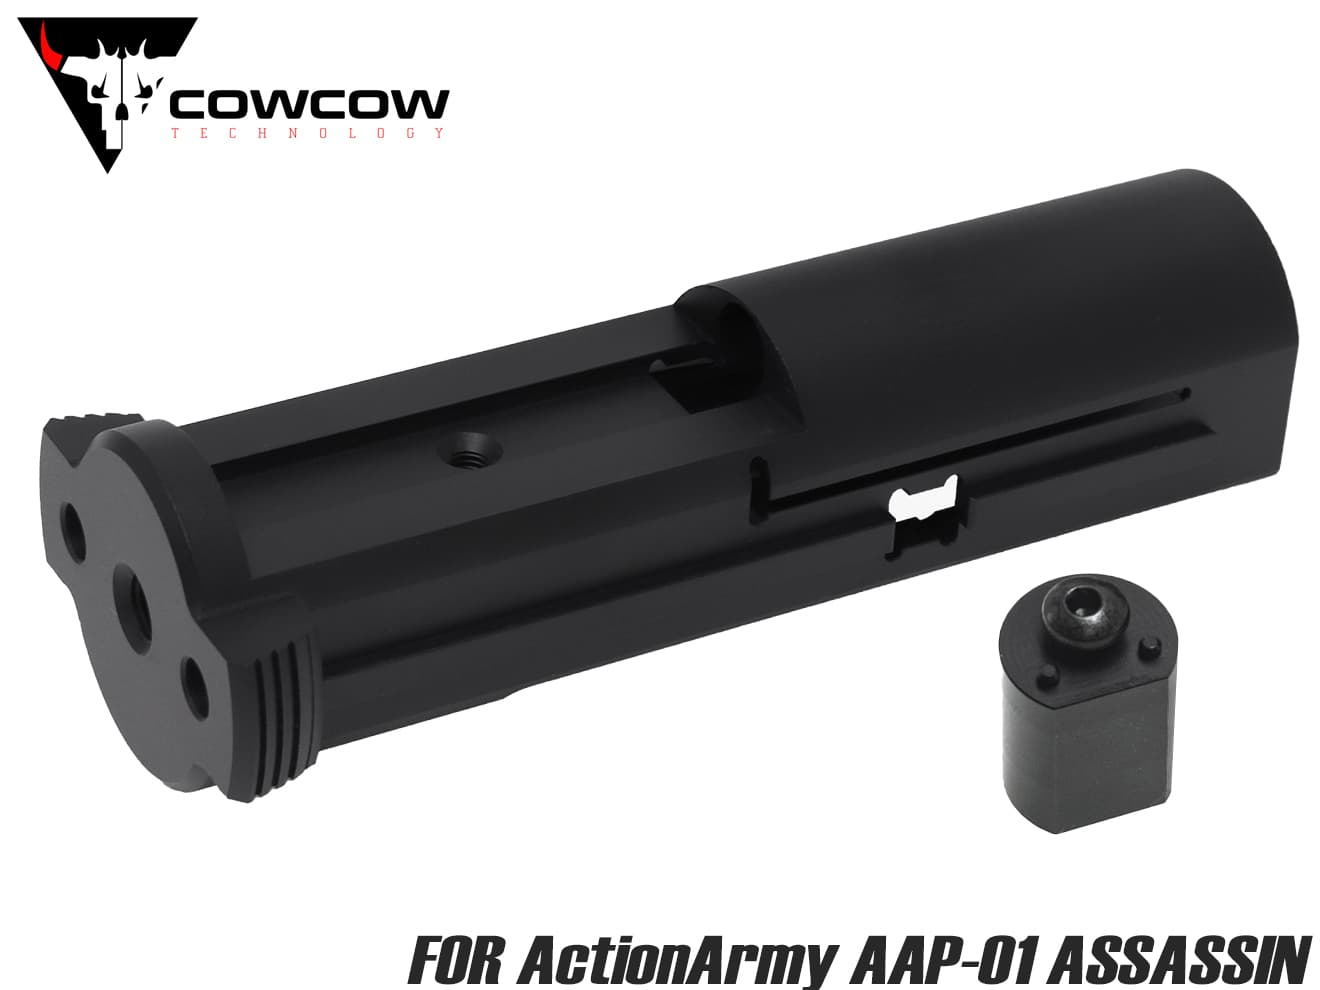 A7075　ミリタリーベース　COWCOW　BASE　AAP-01　ミリタリーベース　ウルトラライトウェイト　for　ブローバックユニット　TECHNOLOGY　CNC　シルバー]　–　ActionArmy　[カラー：ブラック　MILITARY